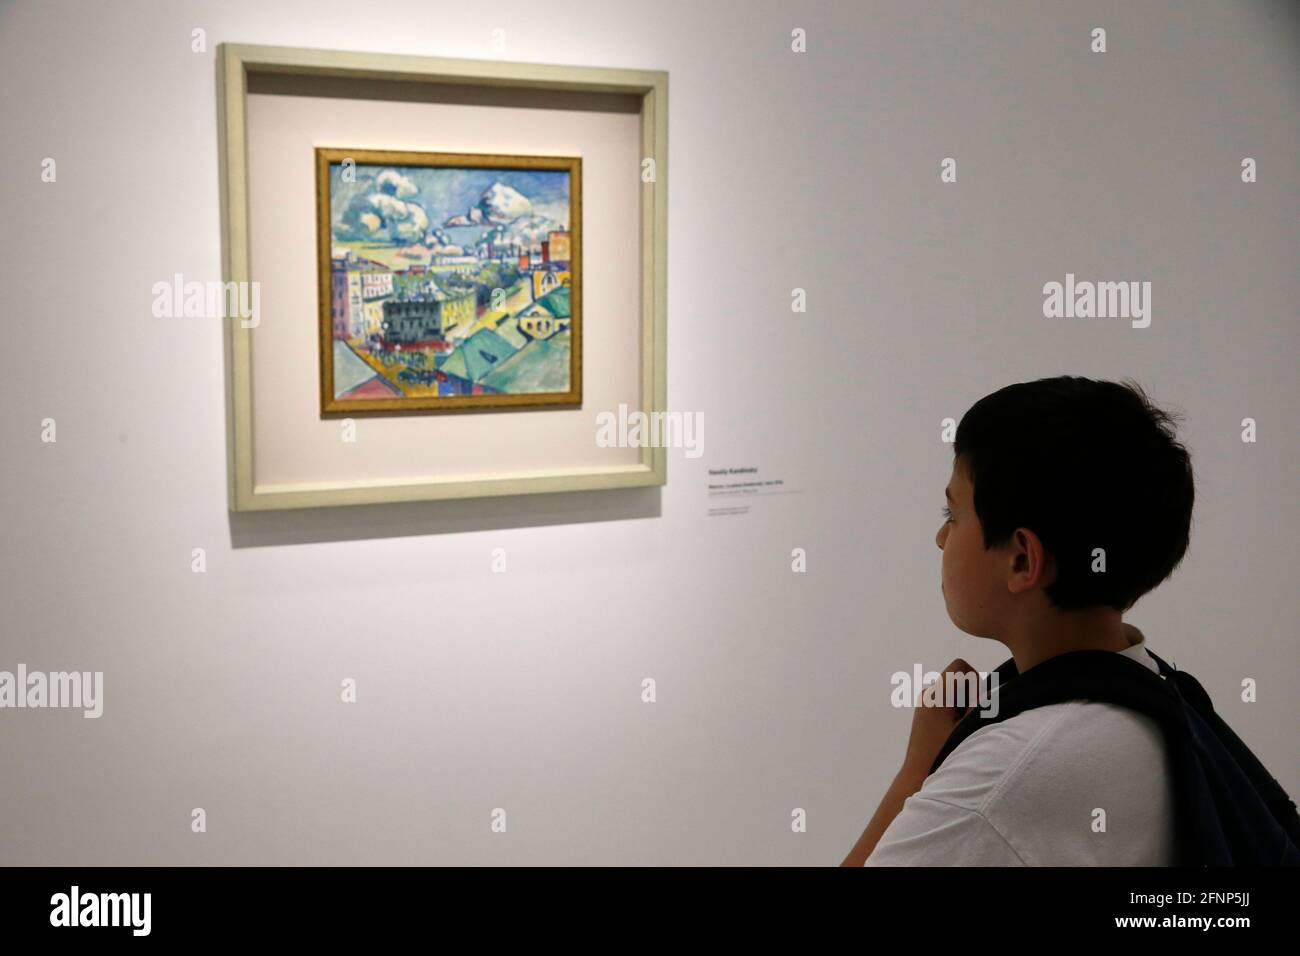 Le Centre Pompidou, Musée National d'Art moderne, Paris, France. Garçon regardant une peinture Banque D'Images